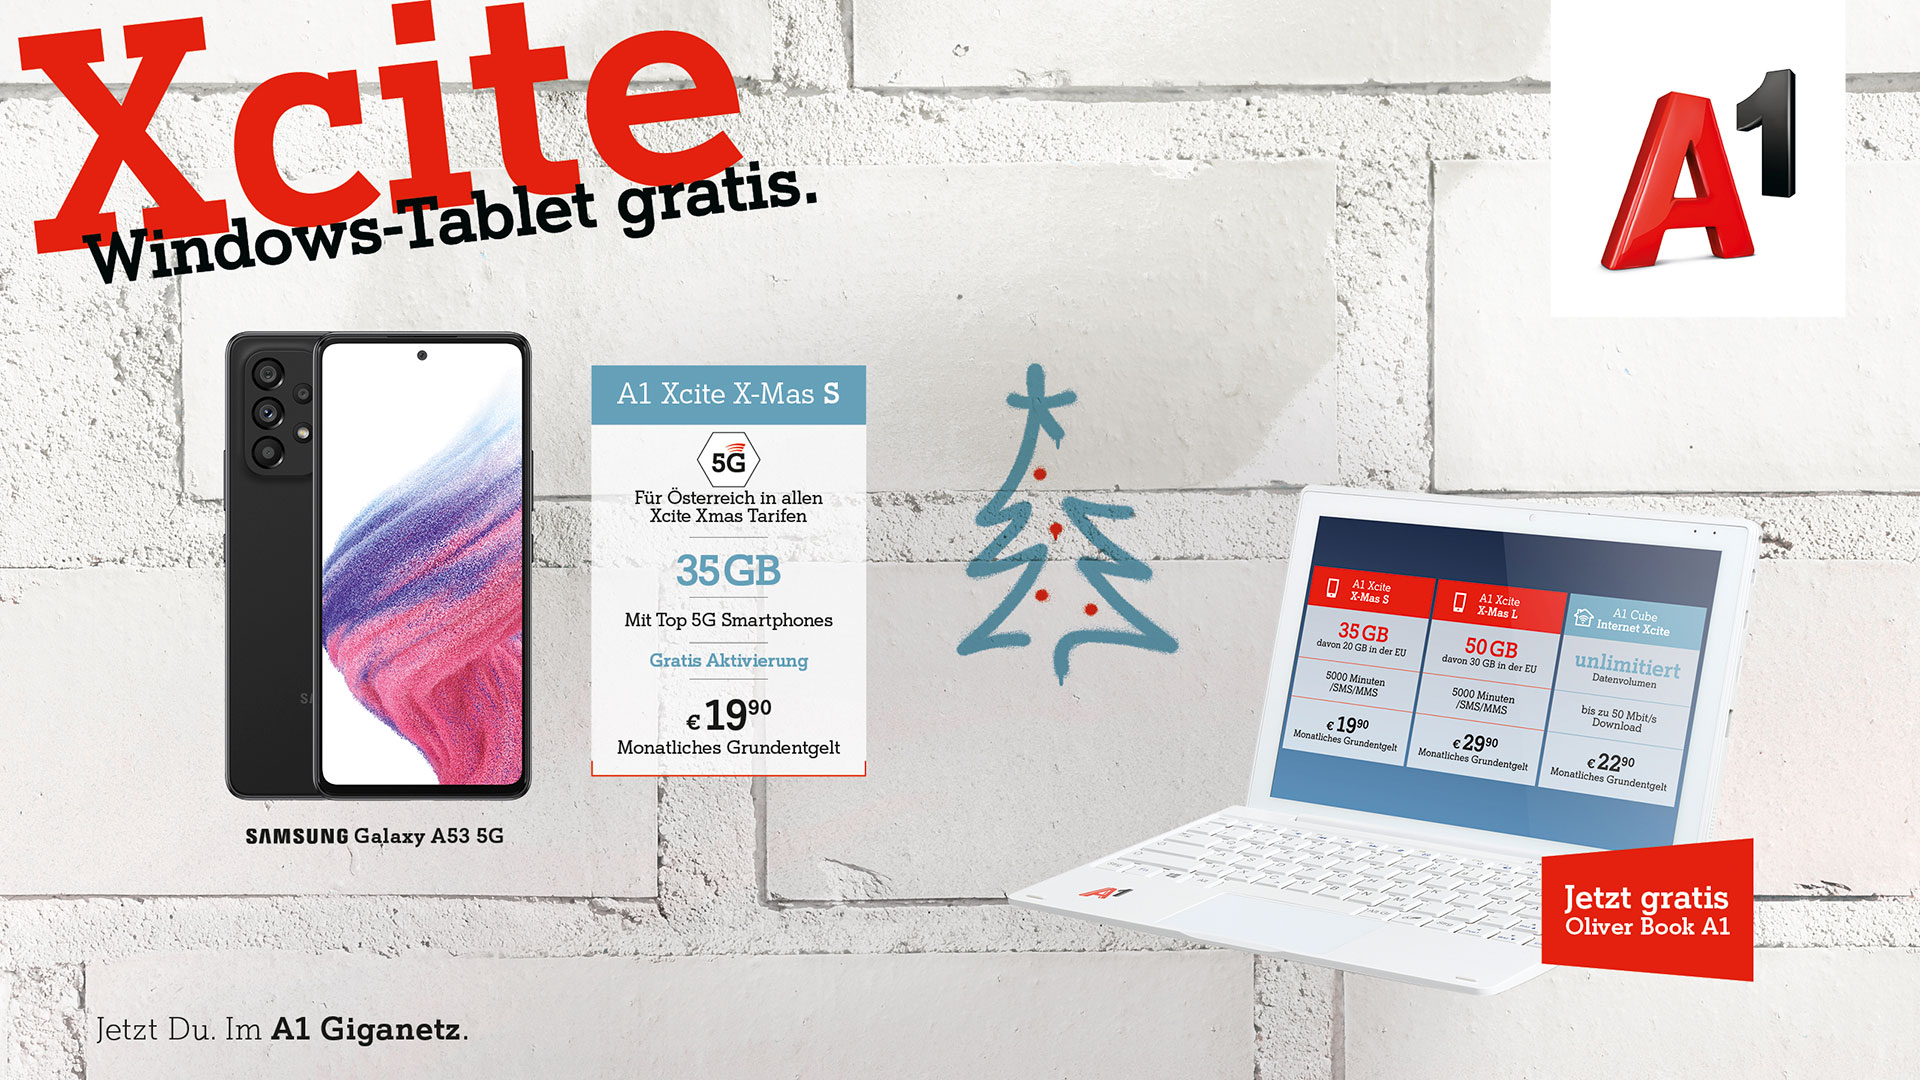 Xcite Windows-Tablet gratis. Samsung Galaxy A53 5G. Jetzt Du. Im A1 Giganetz.